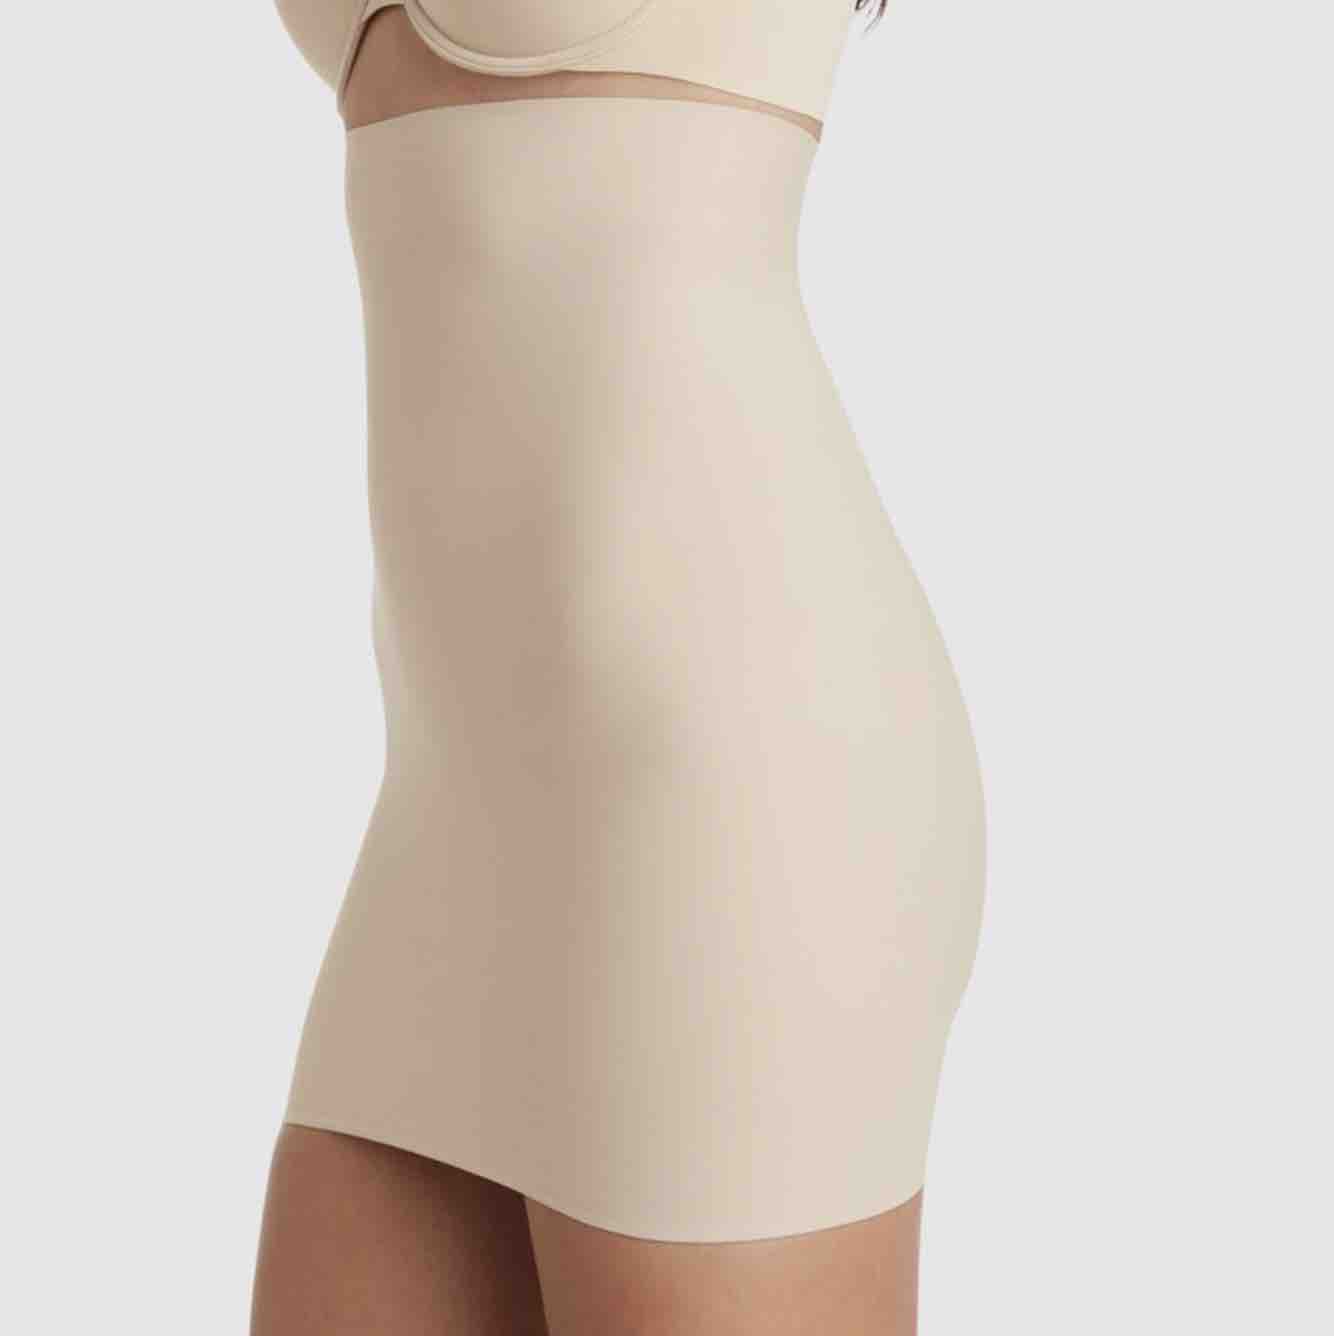 Cupid Sleek Essentials High Waist Shaper Slip Skirt